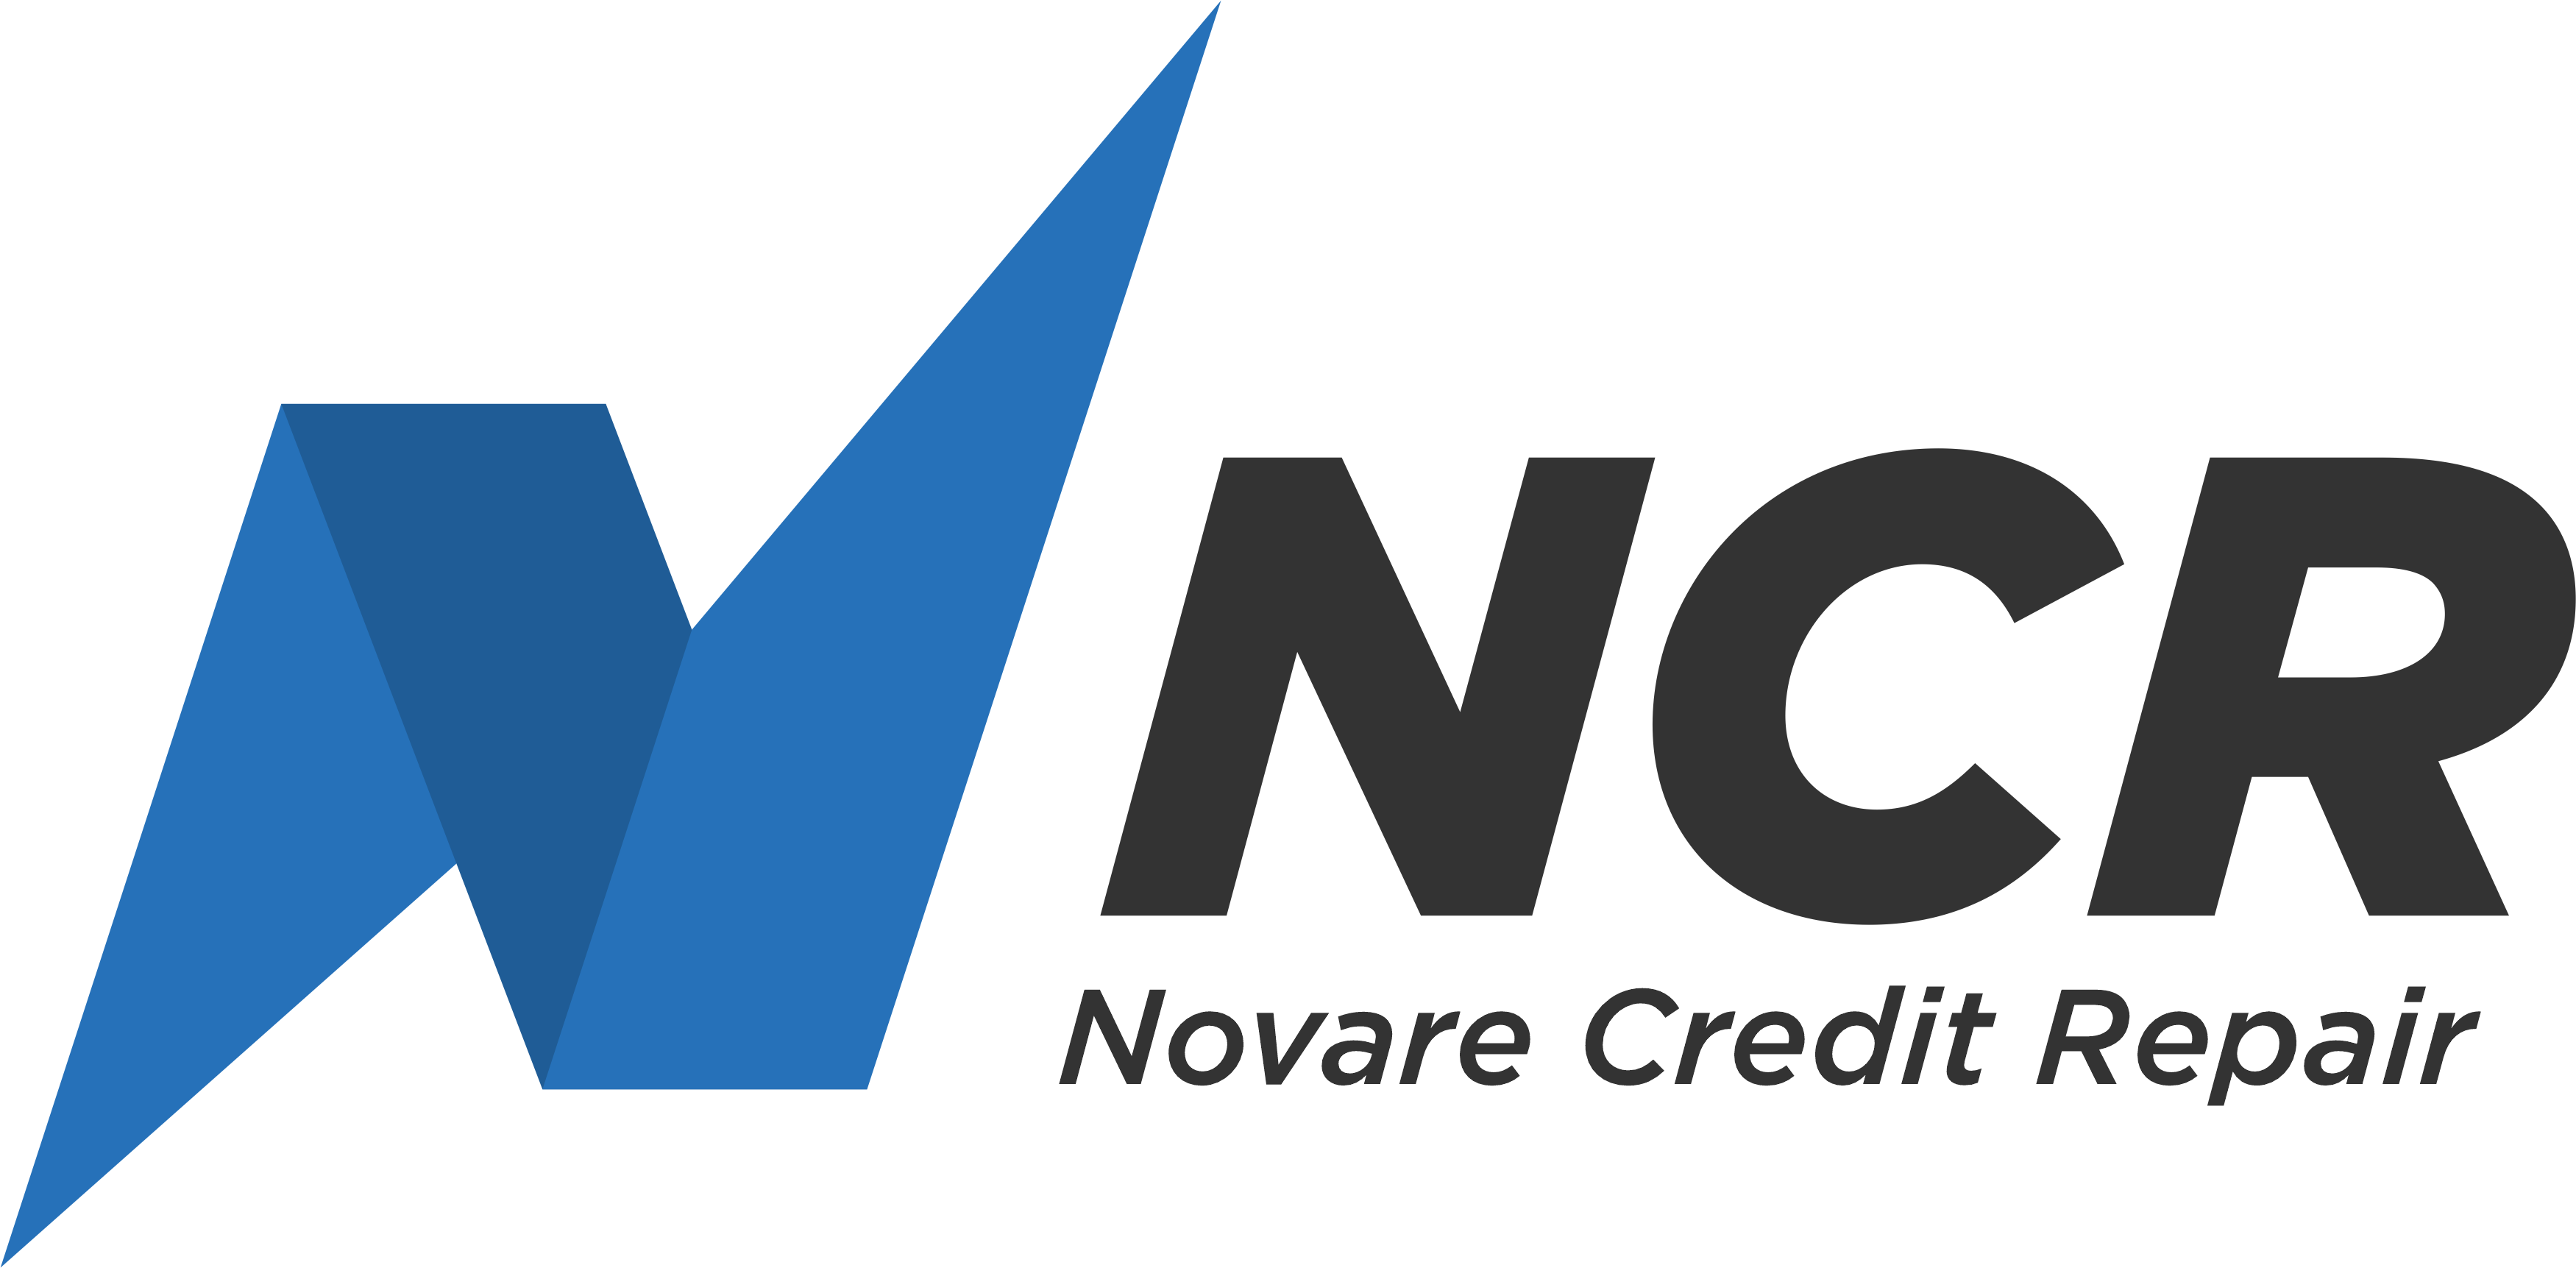 Novare Credit Repair